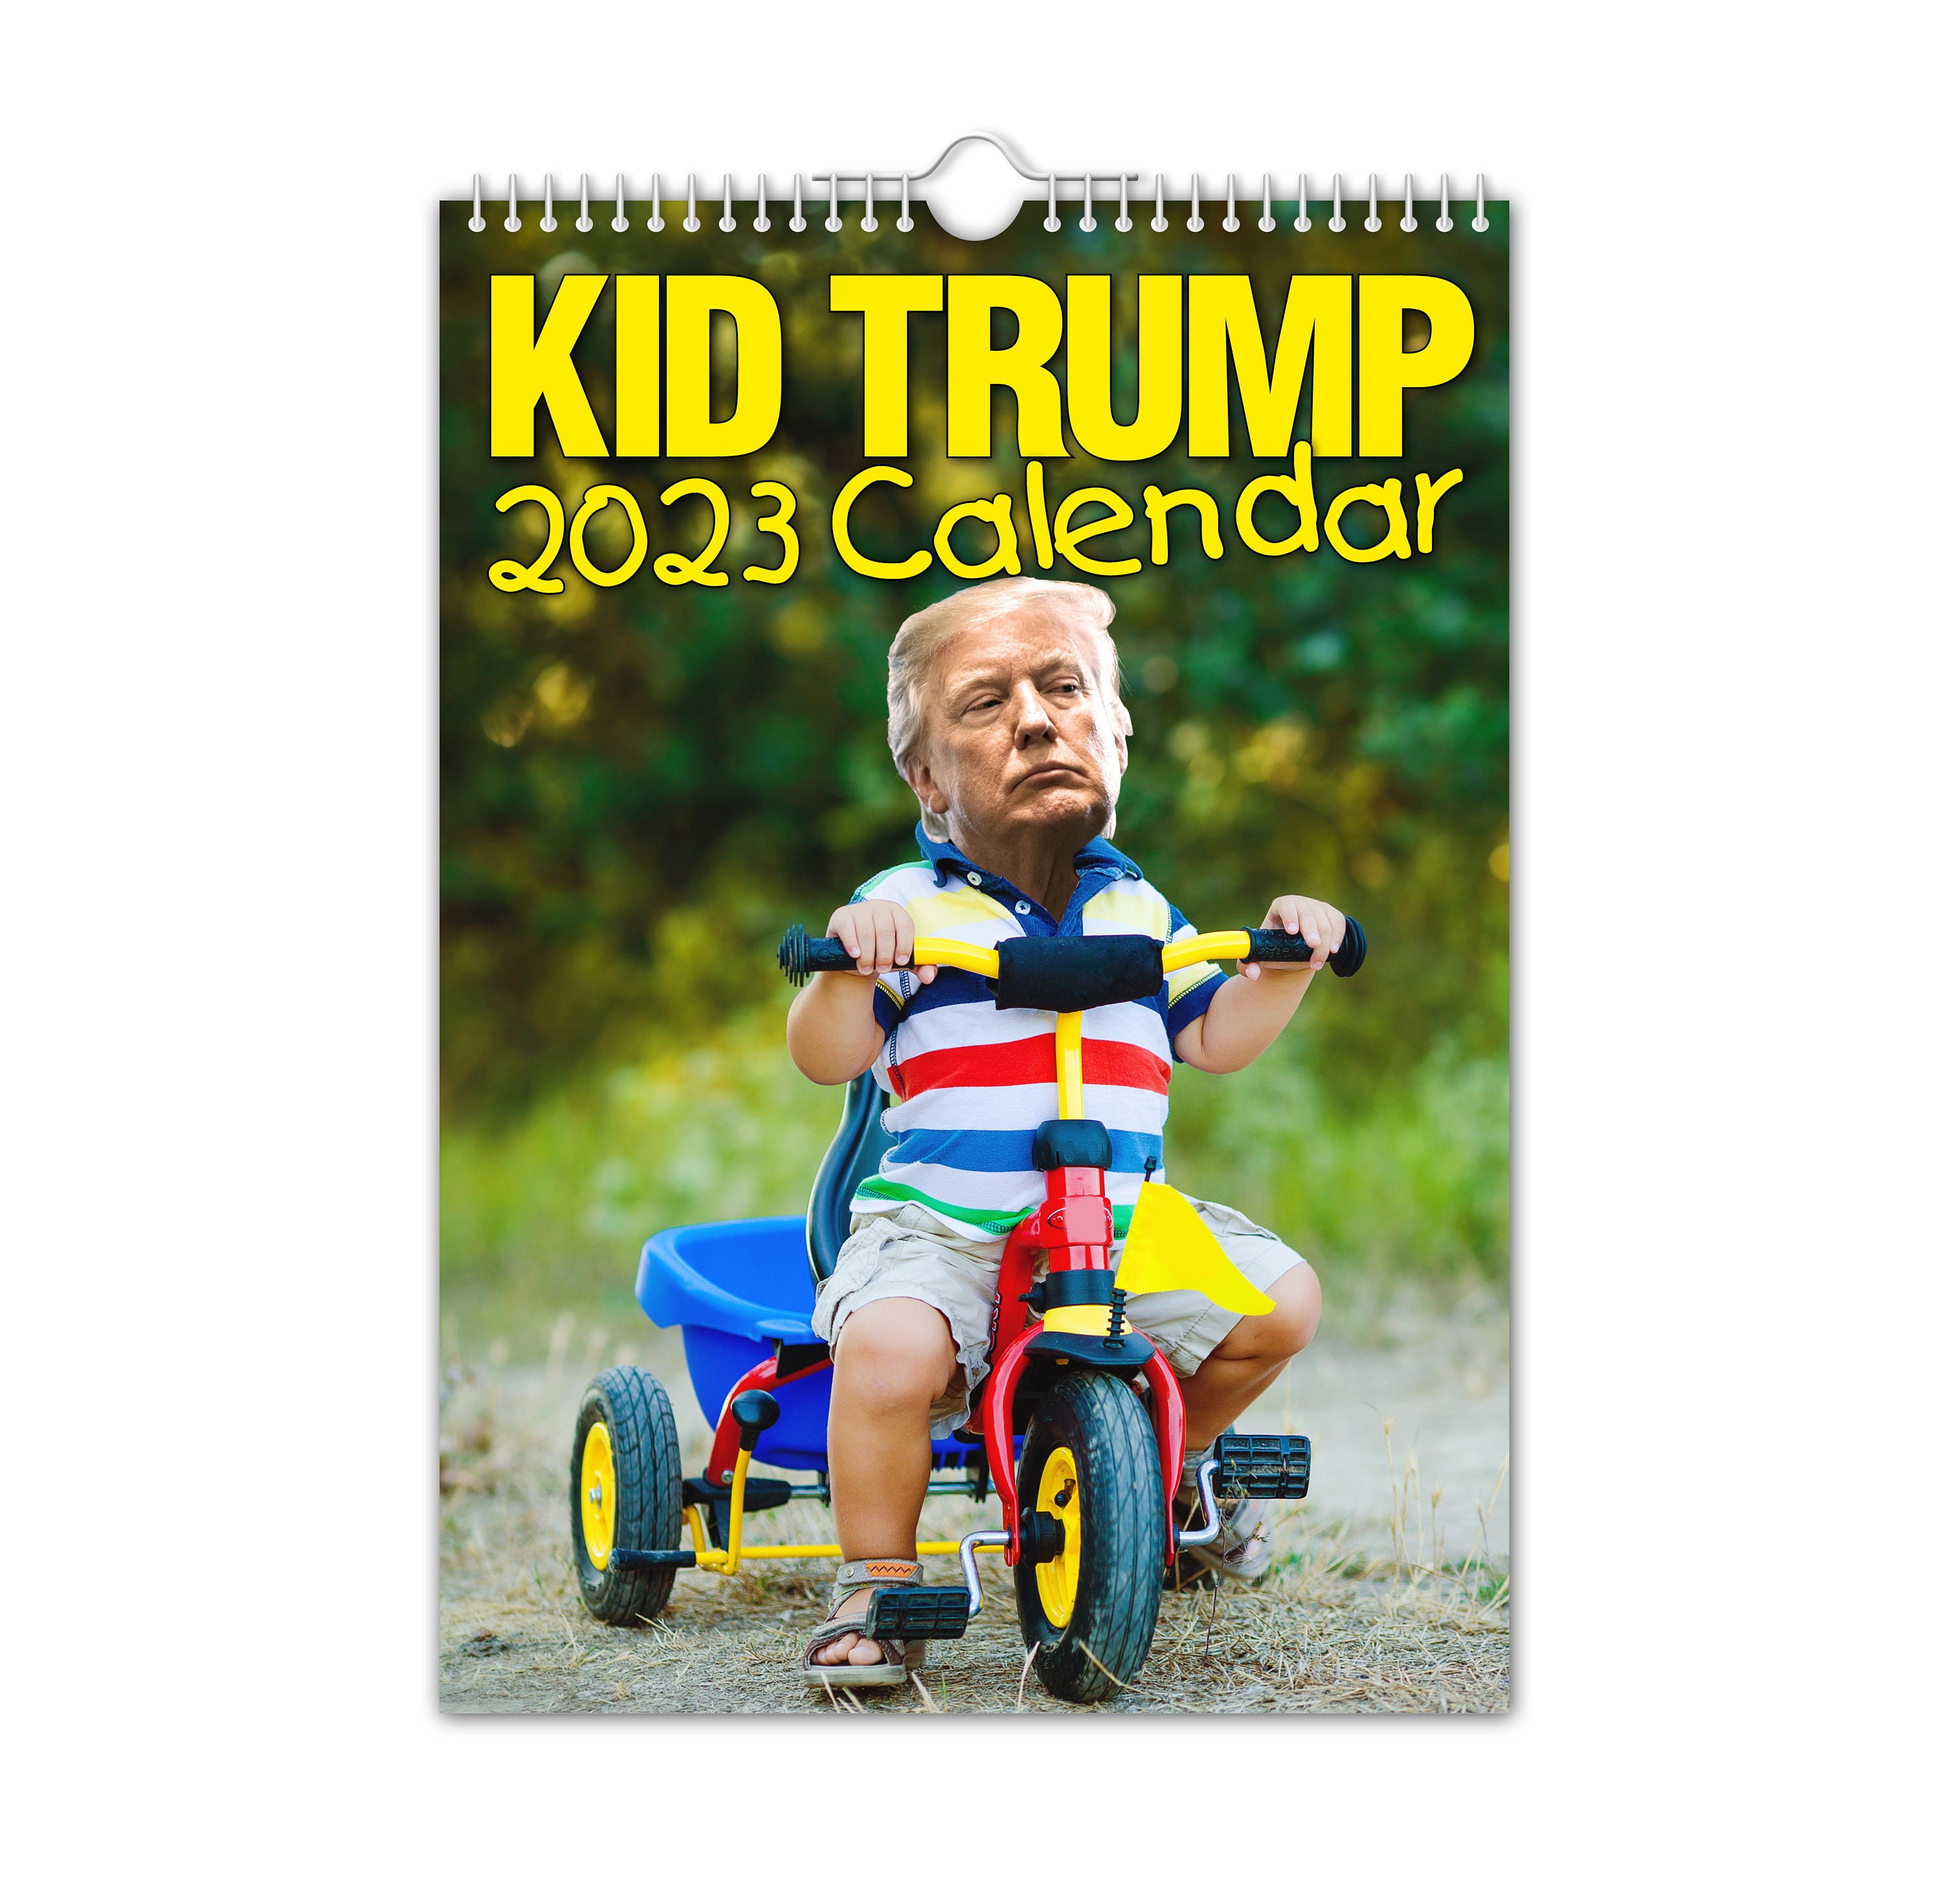 Kid Trump Calendar - Get a Good Laugh